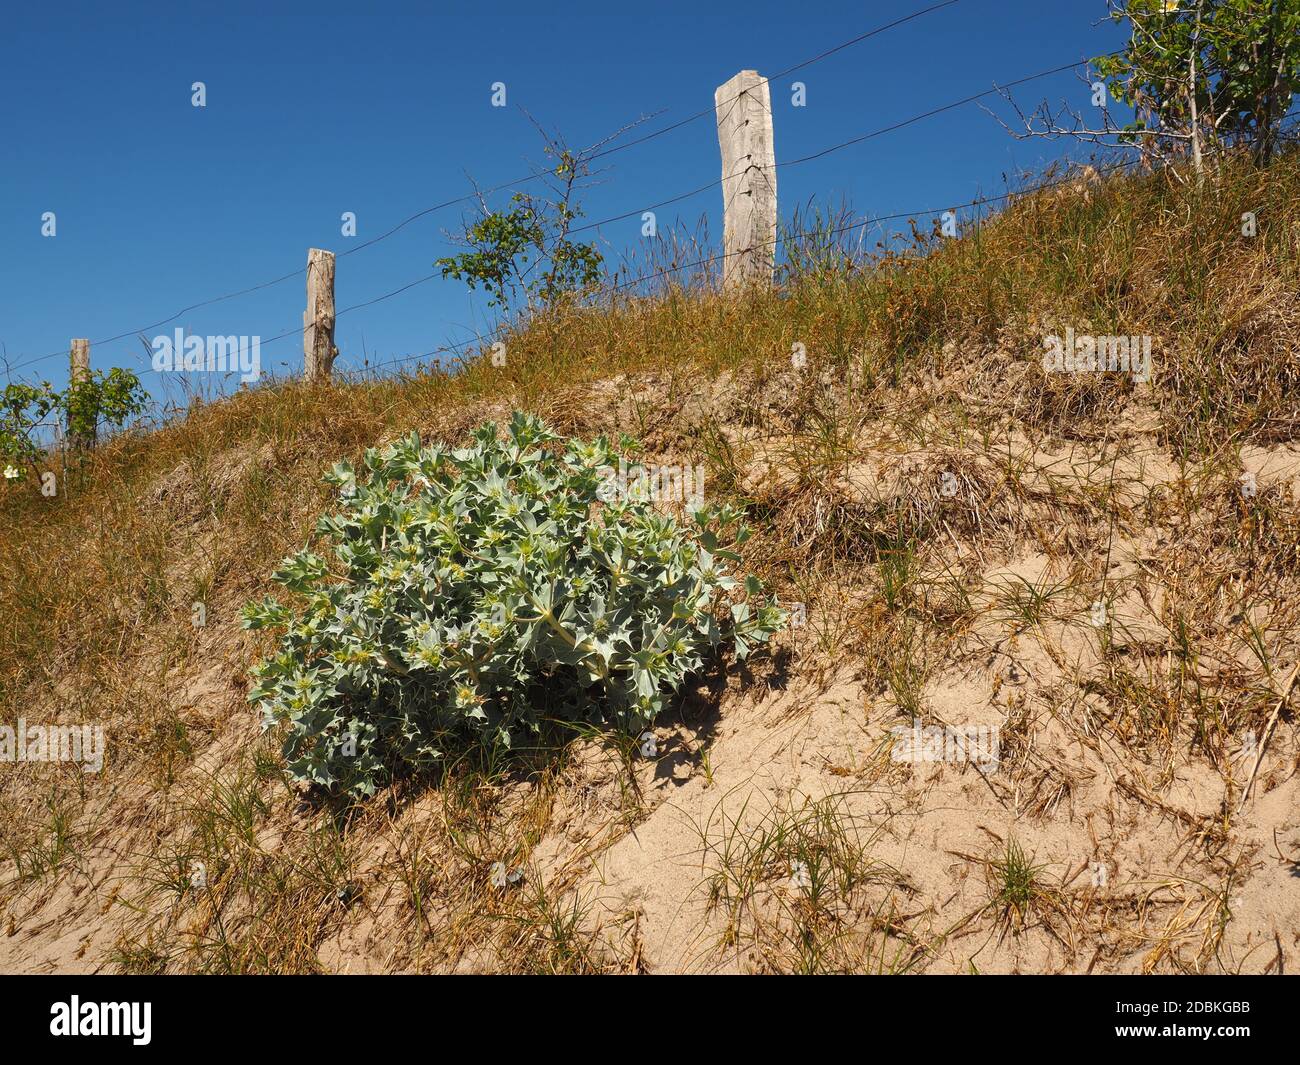 Magnifique holly de mer (Eryngium maritimum) sur une dune, espèce végétale en voie de disparition Banque D'Images